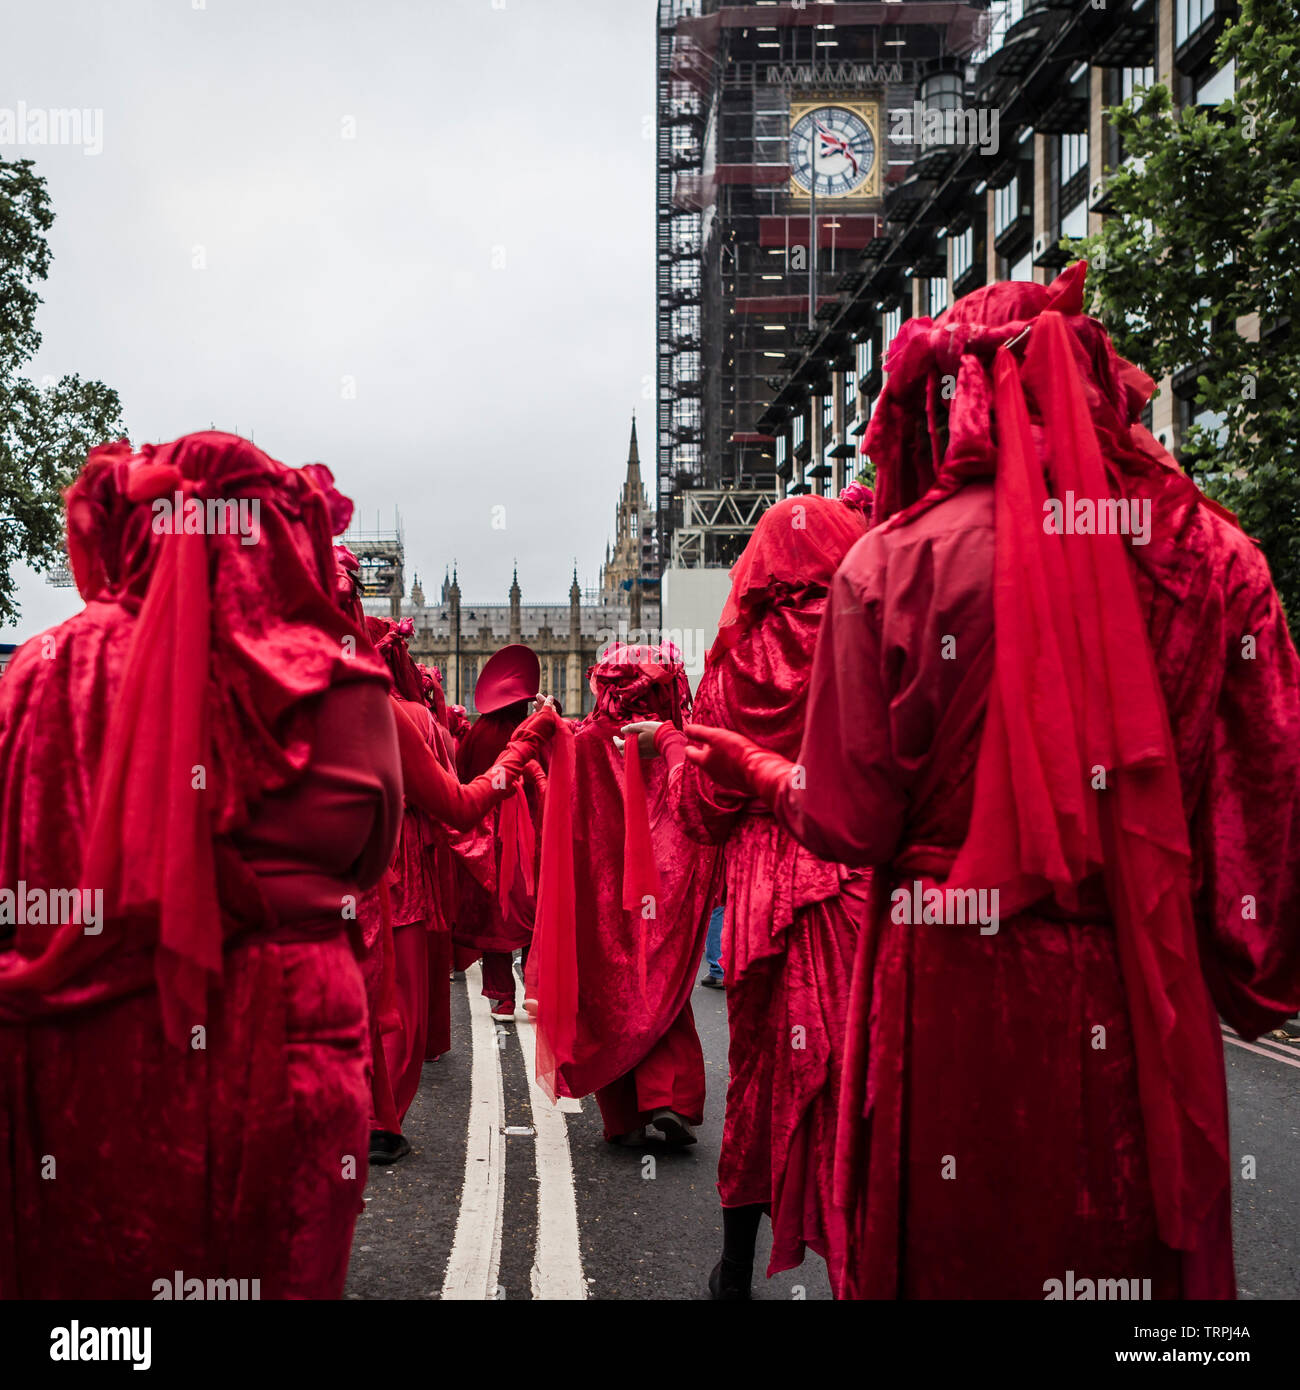 Londra, giugno 4, 2019. Brigata rossa protestare silenziosamente durante la Presidente Tump la visita di Stato nel Regno Unito Foto Stock